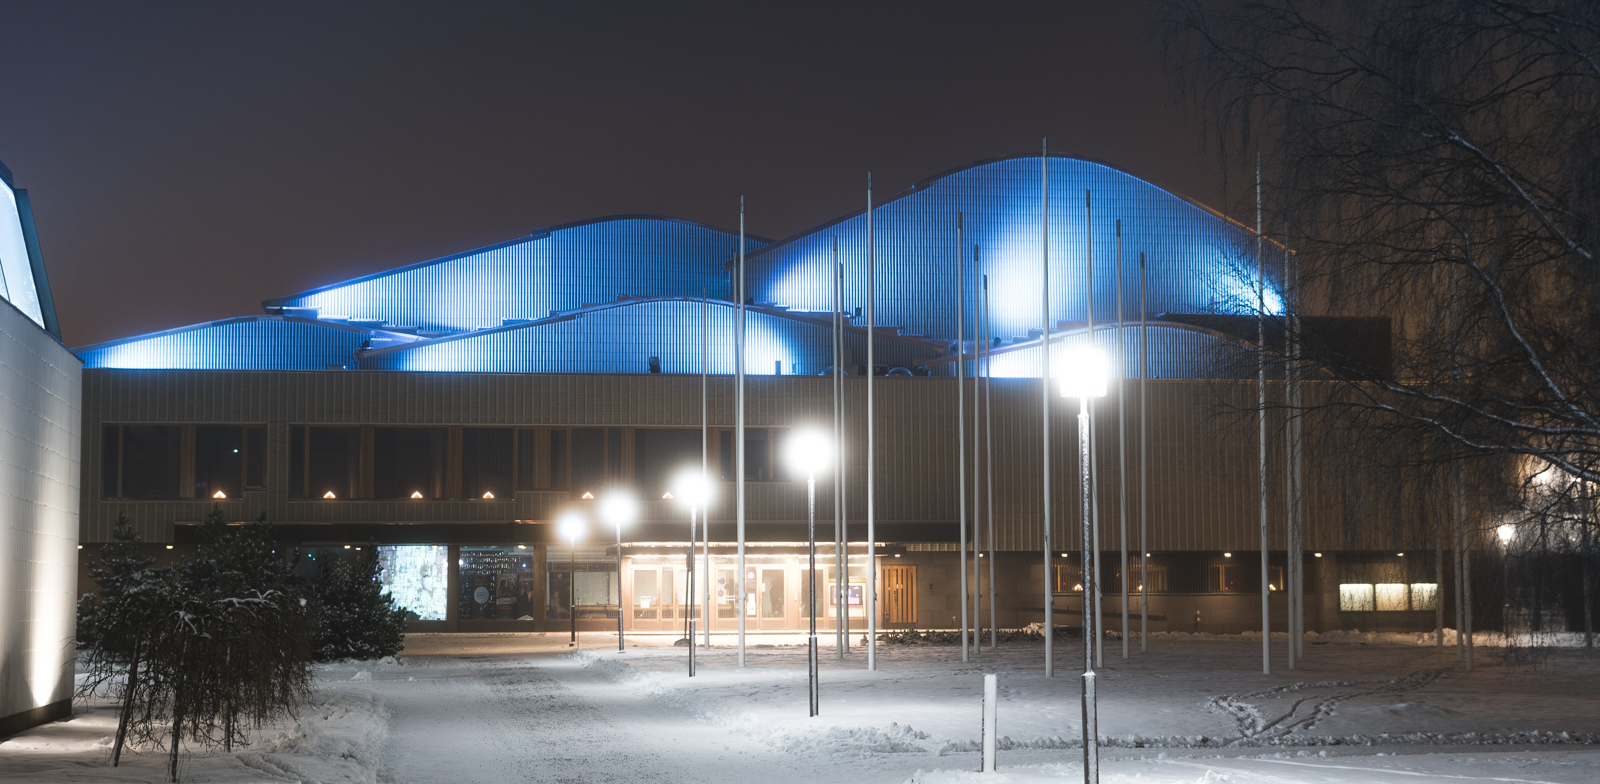 Rovaniemen Teatterissa on käyty muutosneuvottelut – ”Säästämme mieluummin itse kuin korotamme roimasti lippujen hintoja”